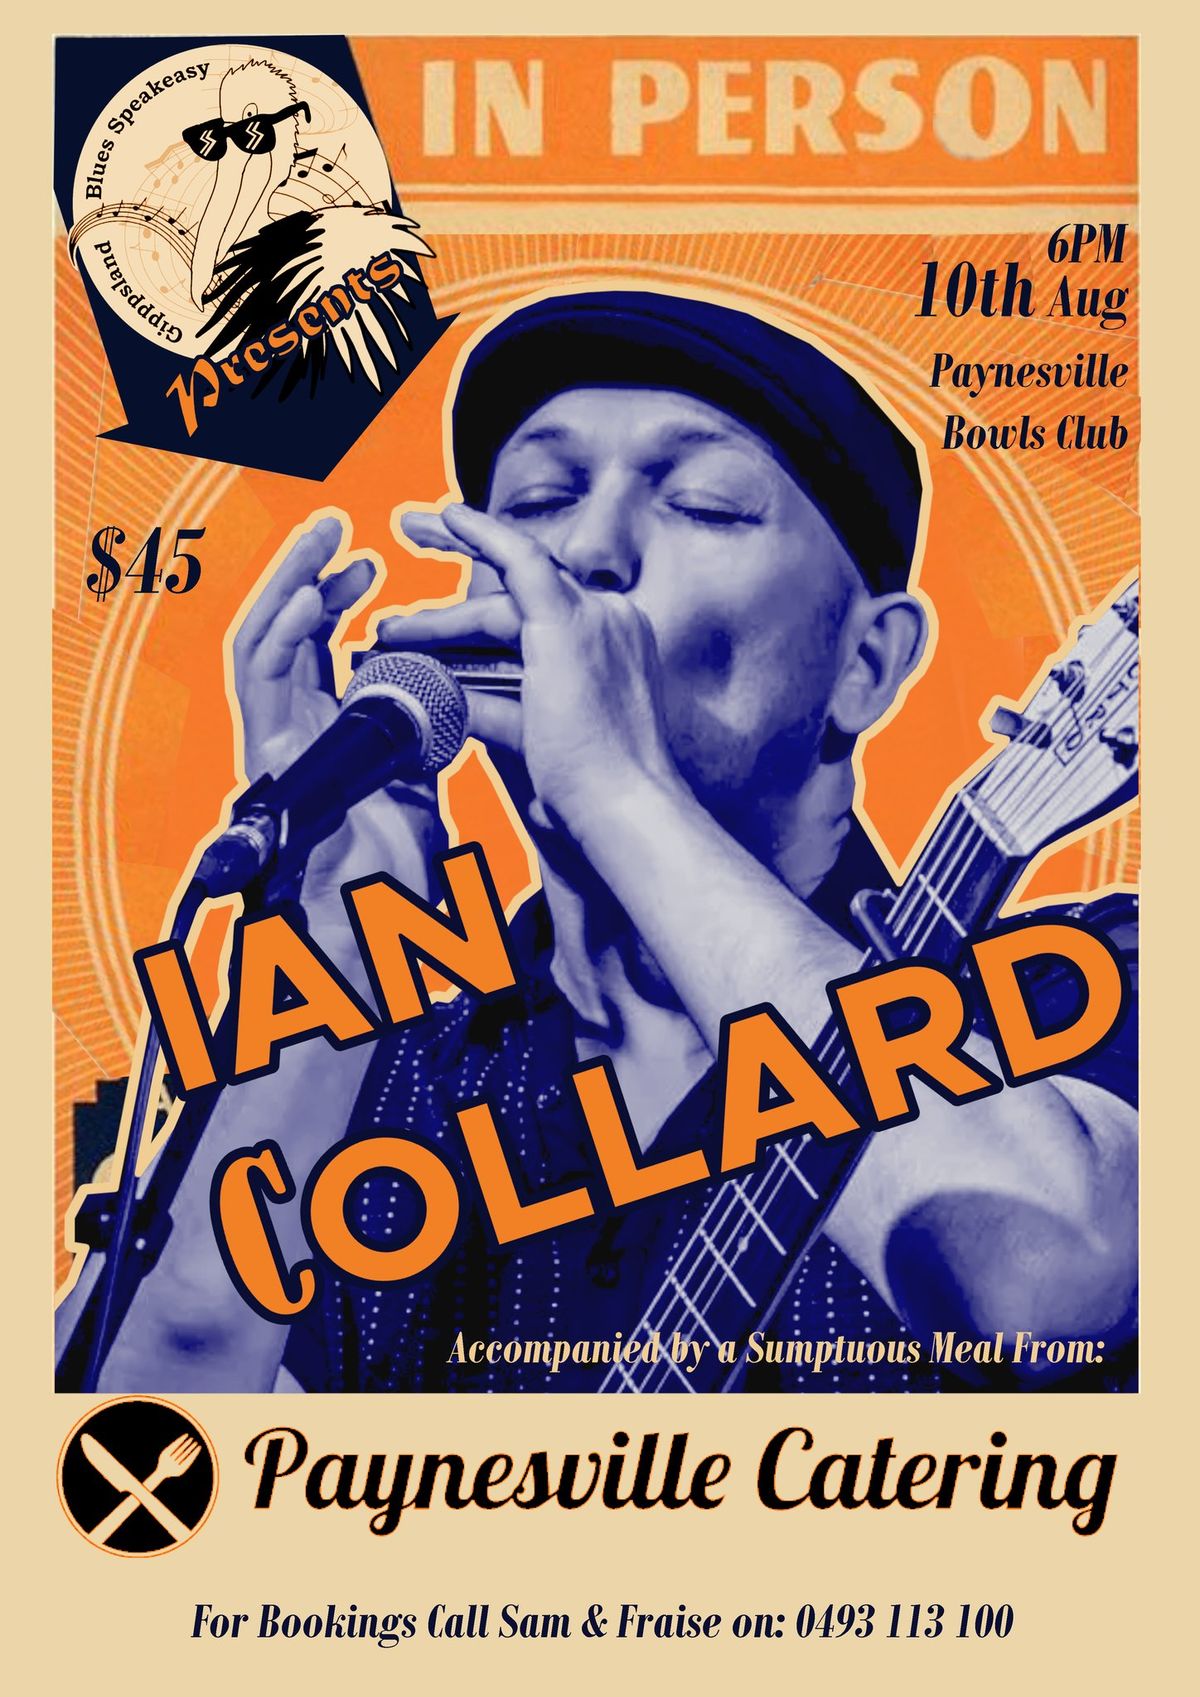 Ian Collard at Gippsland Blues Speakeasy